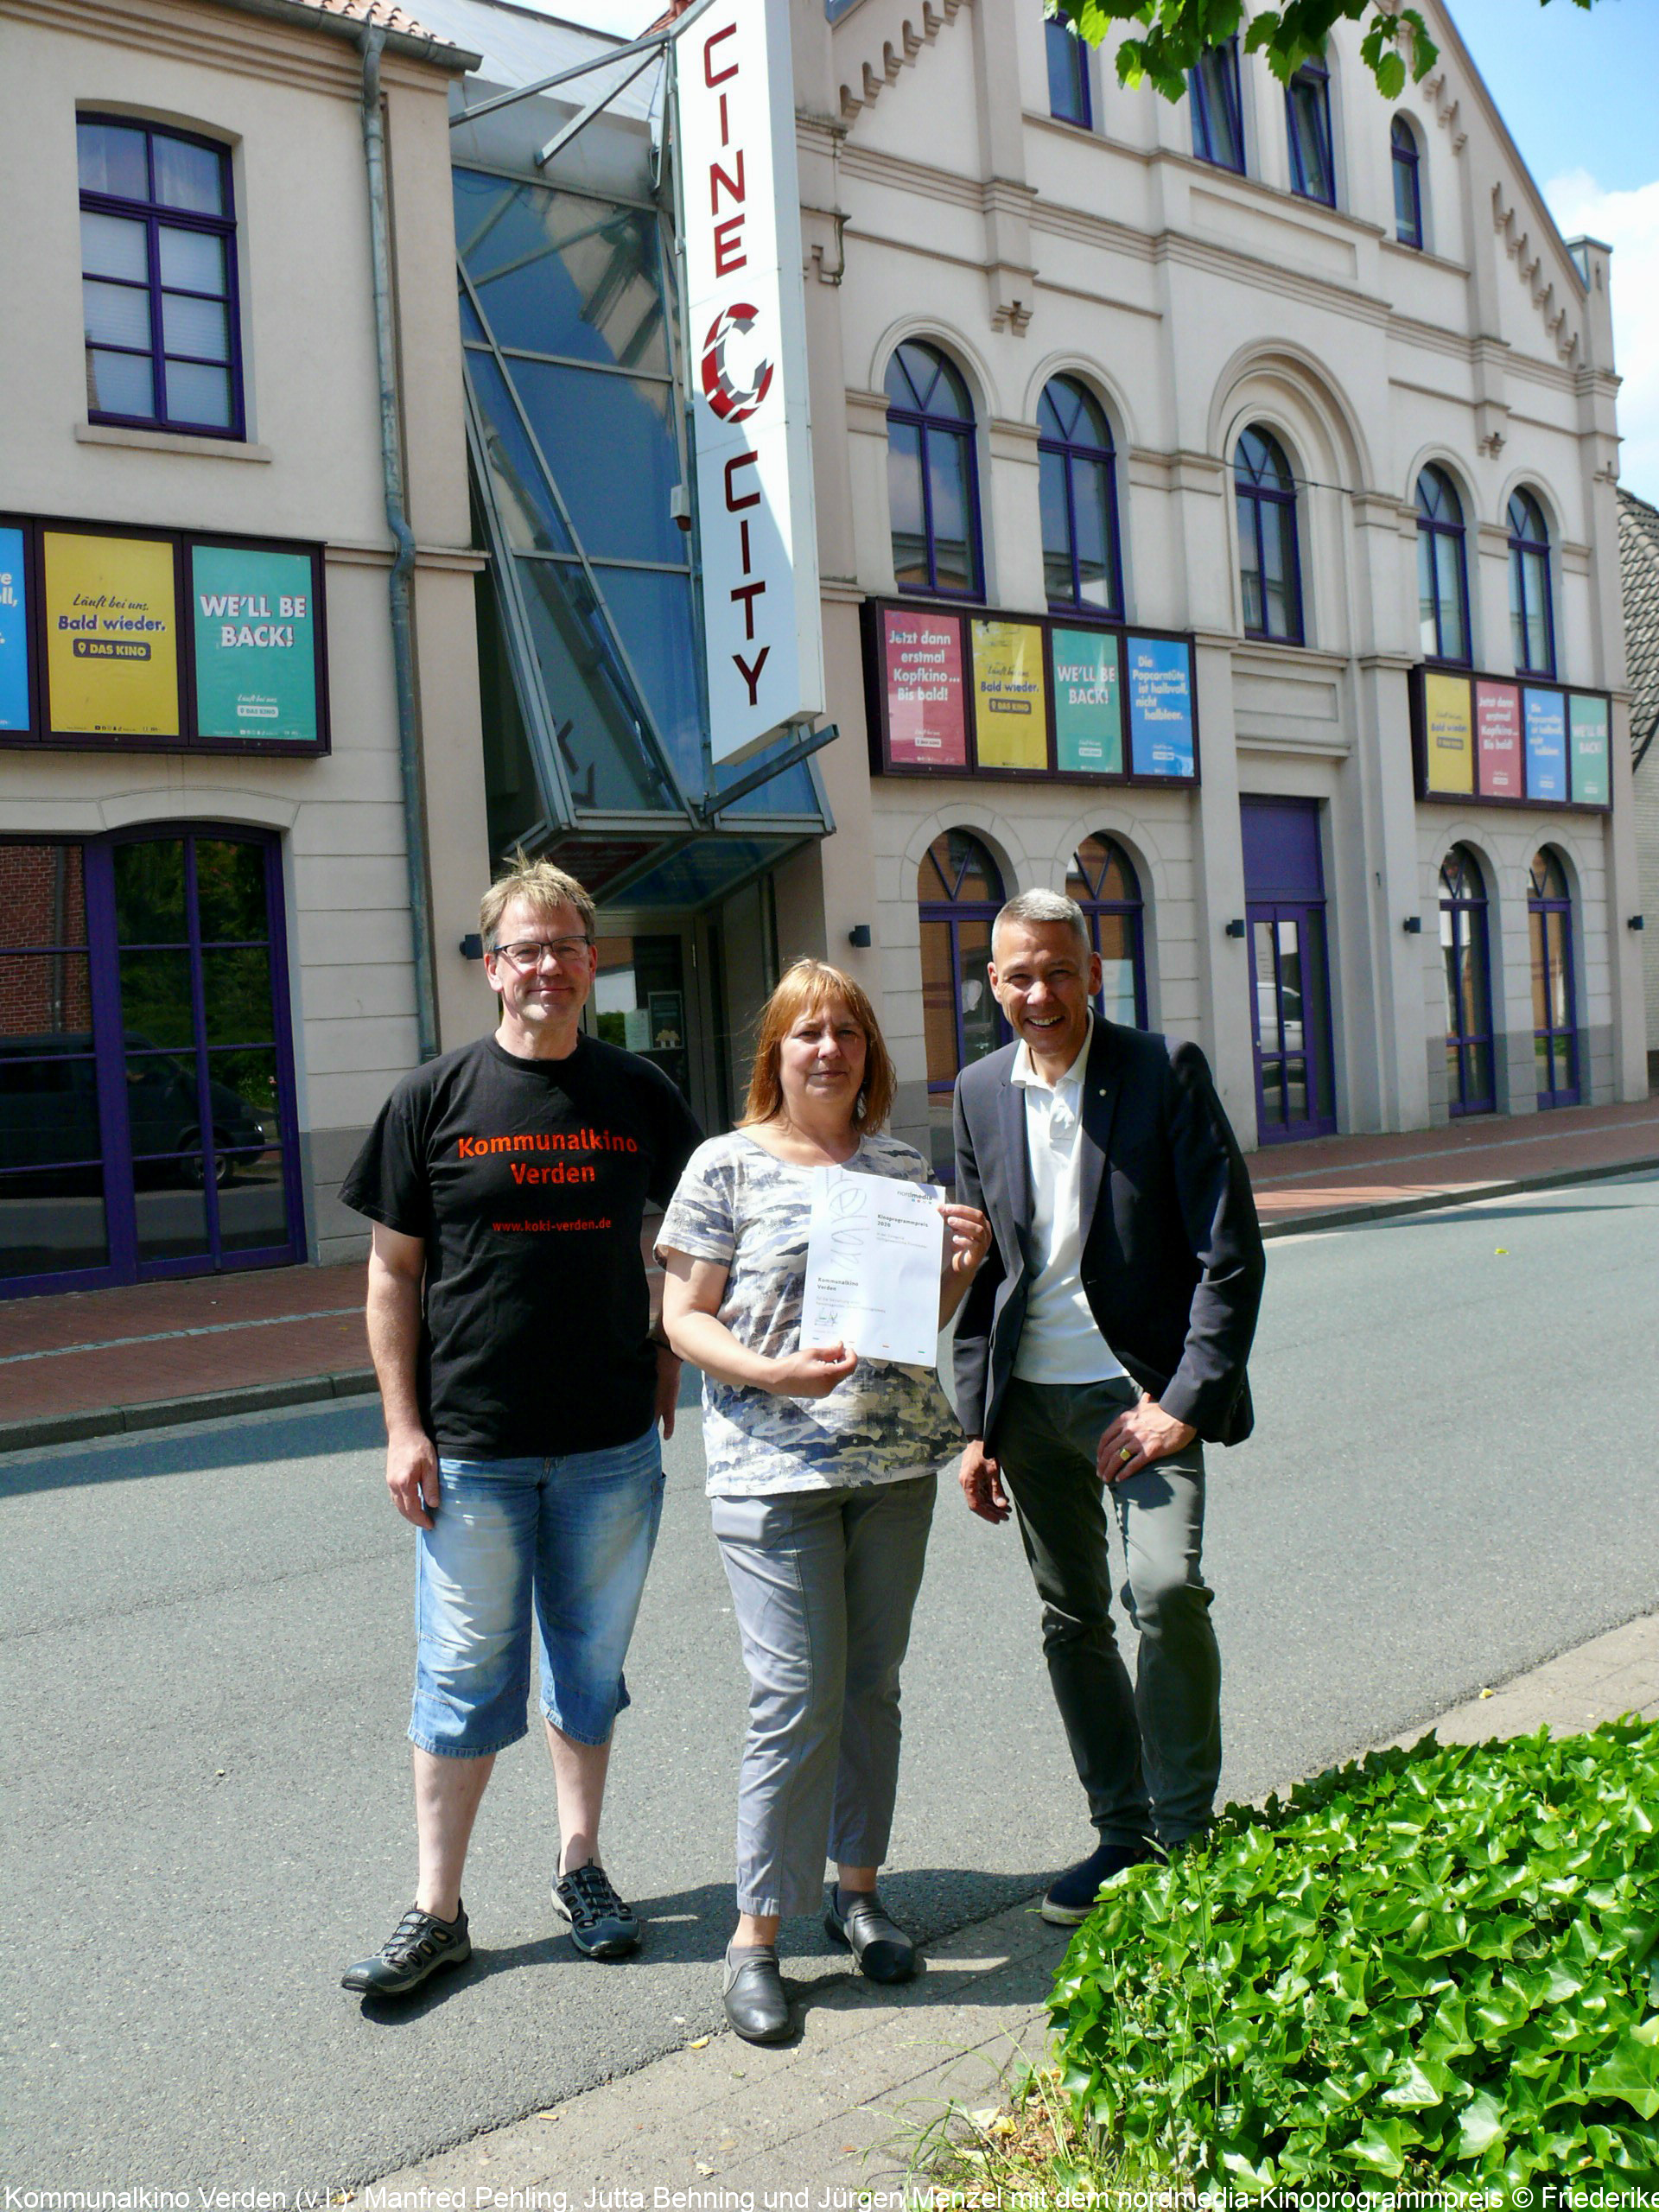 Kommunalkino Verden (v.l.): Manfred Pehling, Jutta Behning und Jürgen Menzel mit dem nordmedia-Kinoprogrammpreis © Friederike Vasen